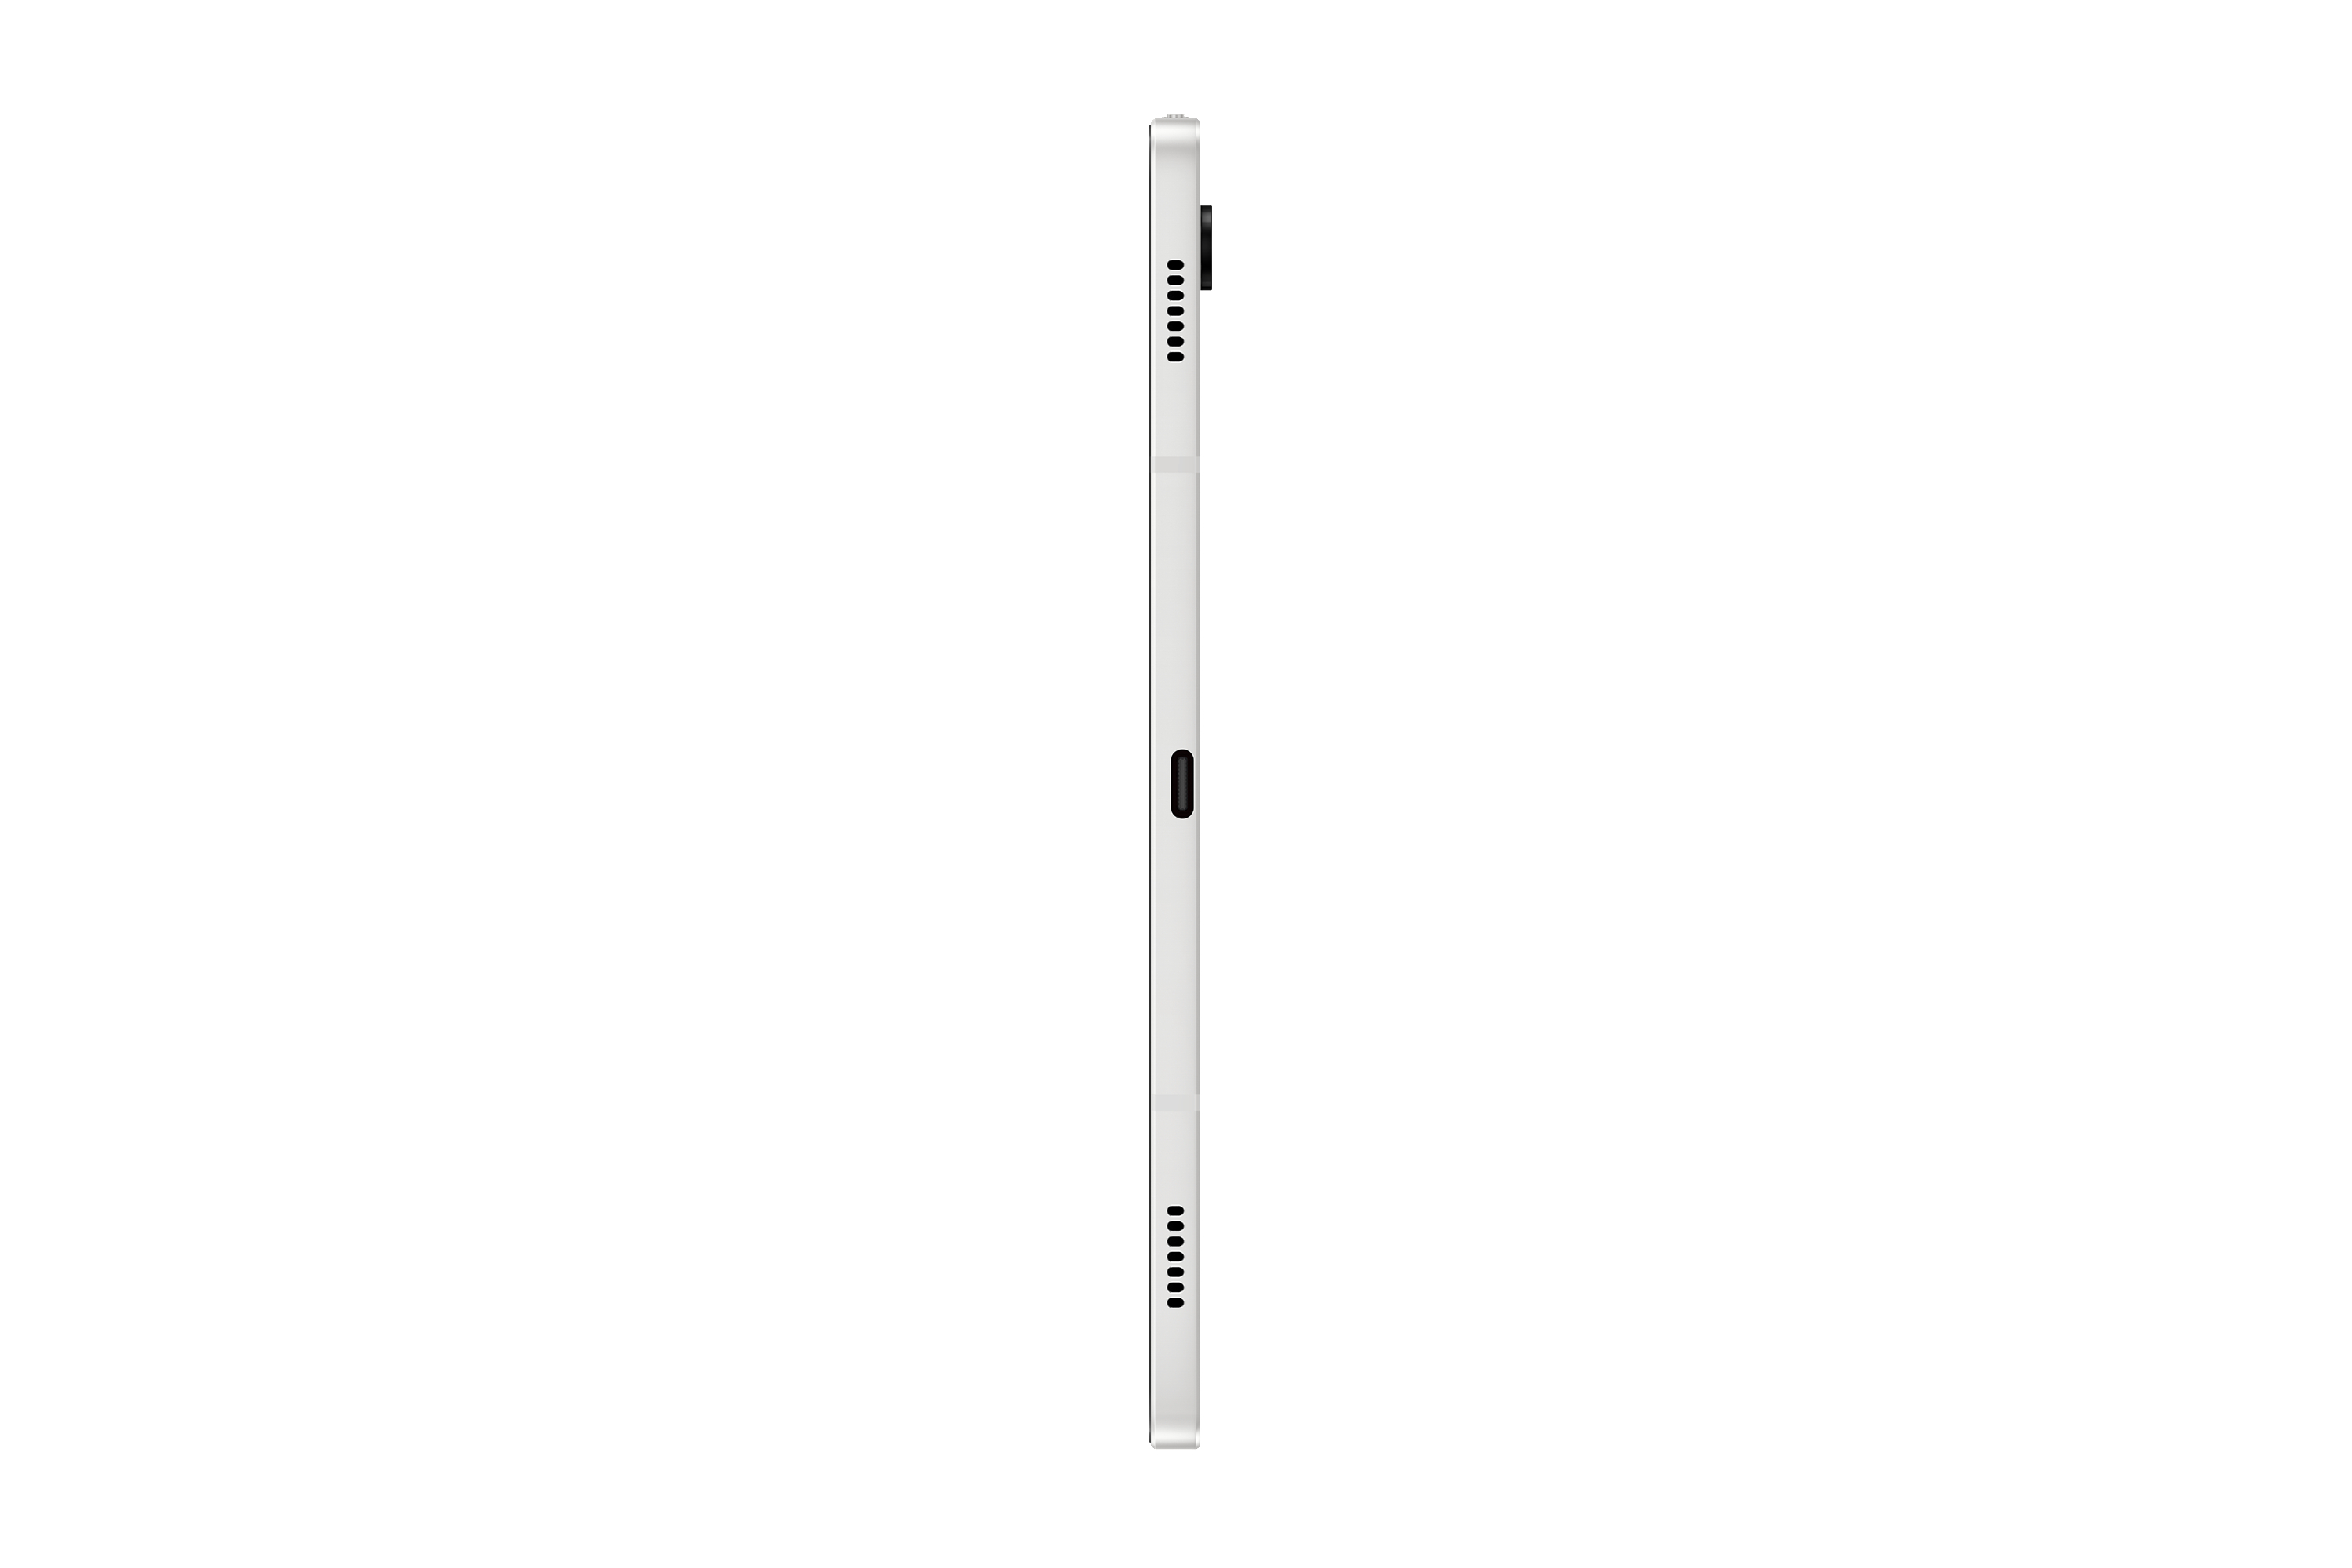 SAMSUNG Galaxy Tab S8 Wi-Fi, Zoll, S-Pen, inklusive Silver GB, 11 Tablet, 128